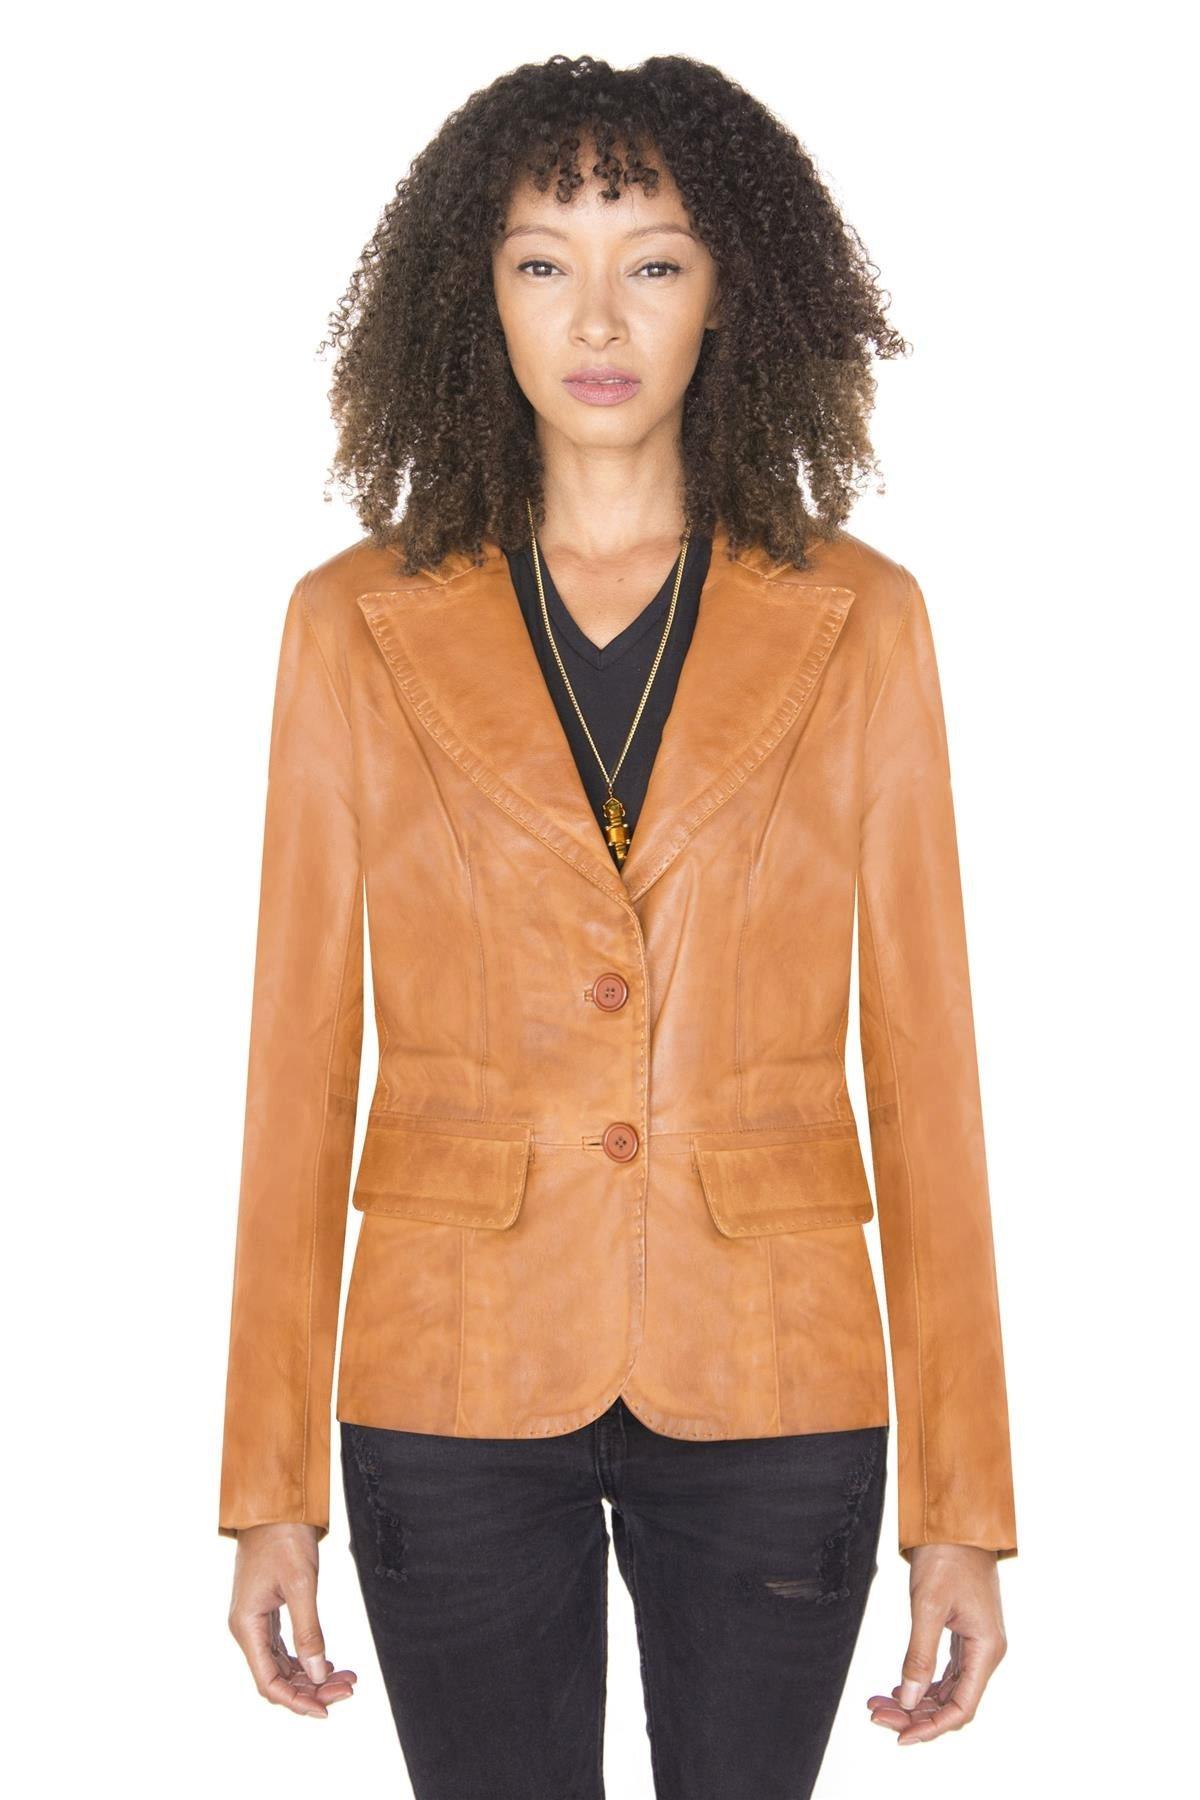 цена Кожаный пиджак-Seregno Infinity Leather, коричневый